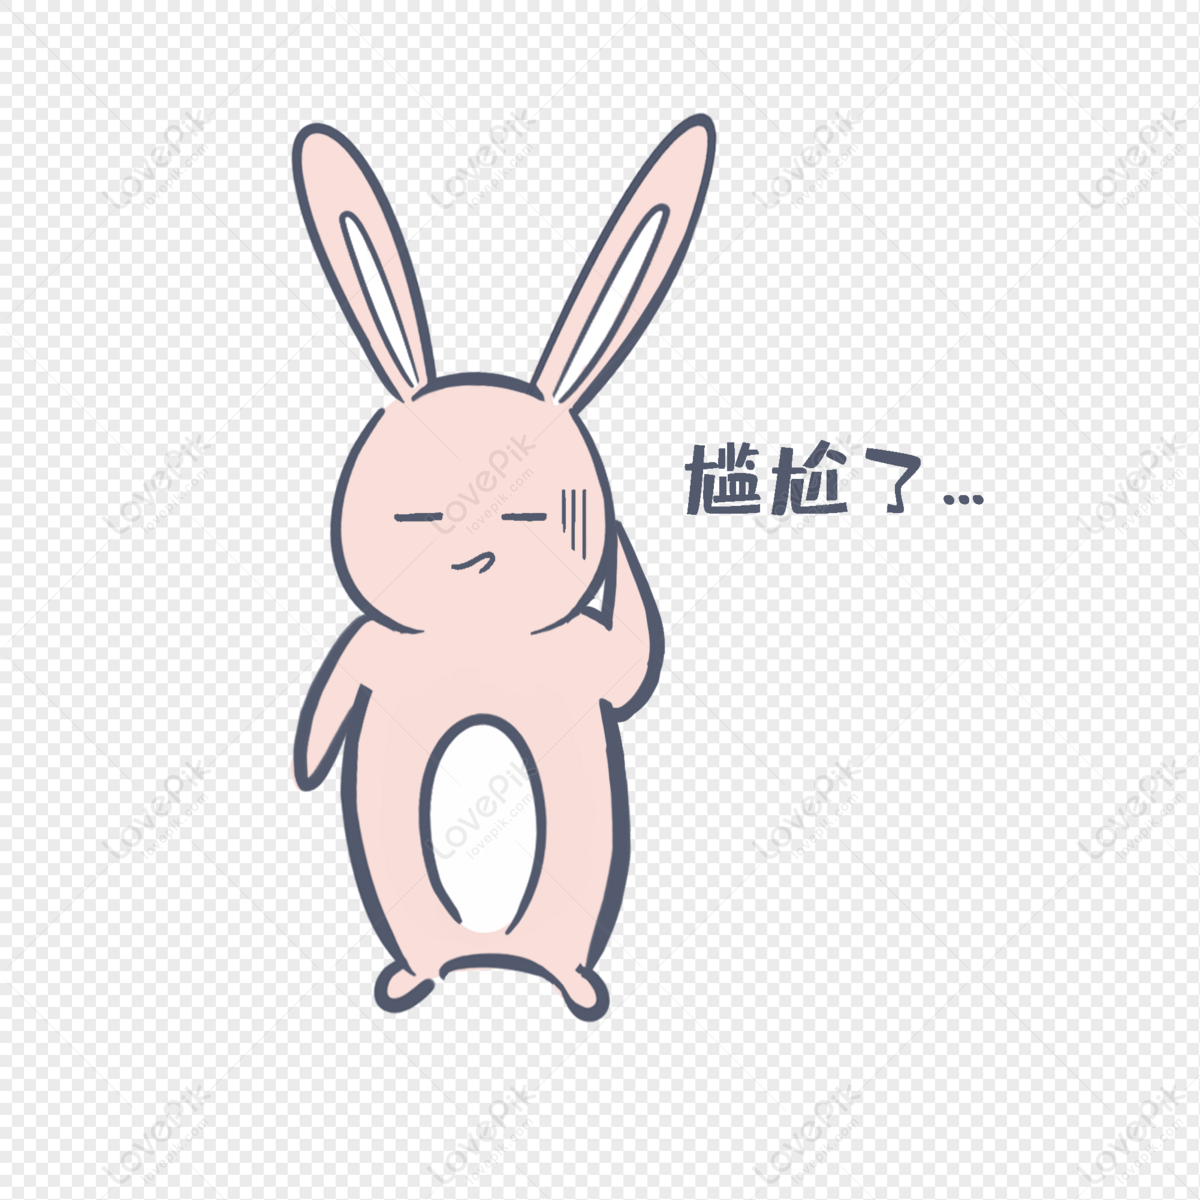 Biểu tượng cảm xúc Bunny Nani - Hãy xem những biểu tượng cảm xúc của Bunny Nani, điều này sẽ làm cho bạn cười toe toét cả ngày. Chúng thật dễ thương và đáng yêu, nên bạn không thể bỏ qua!